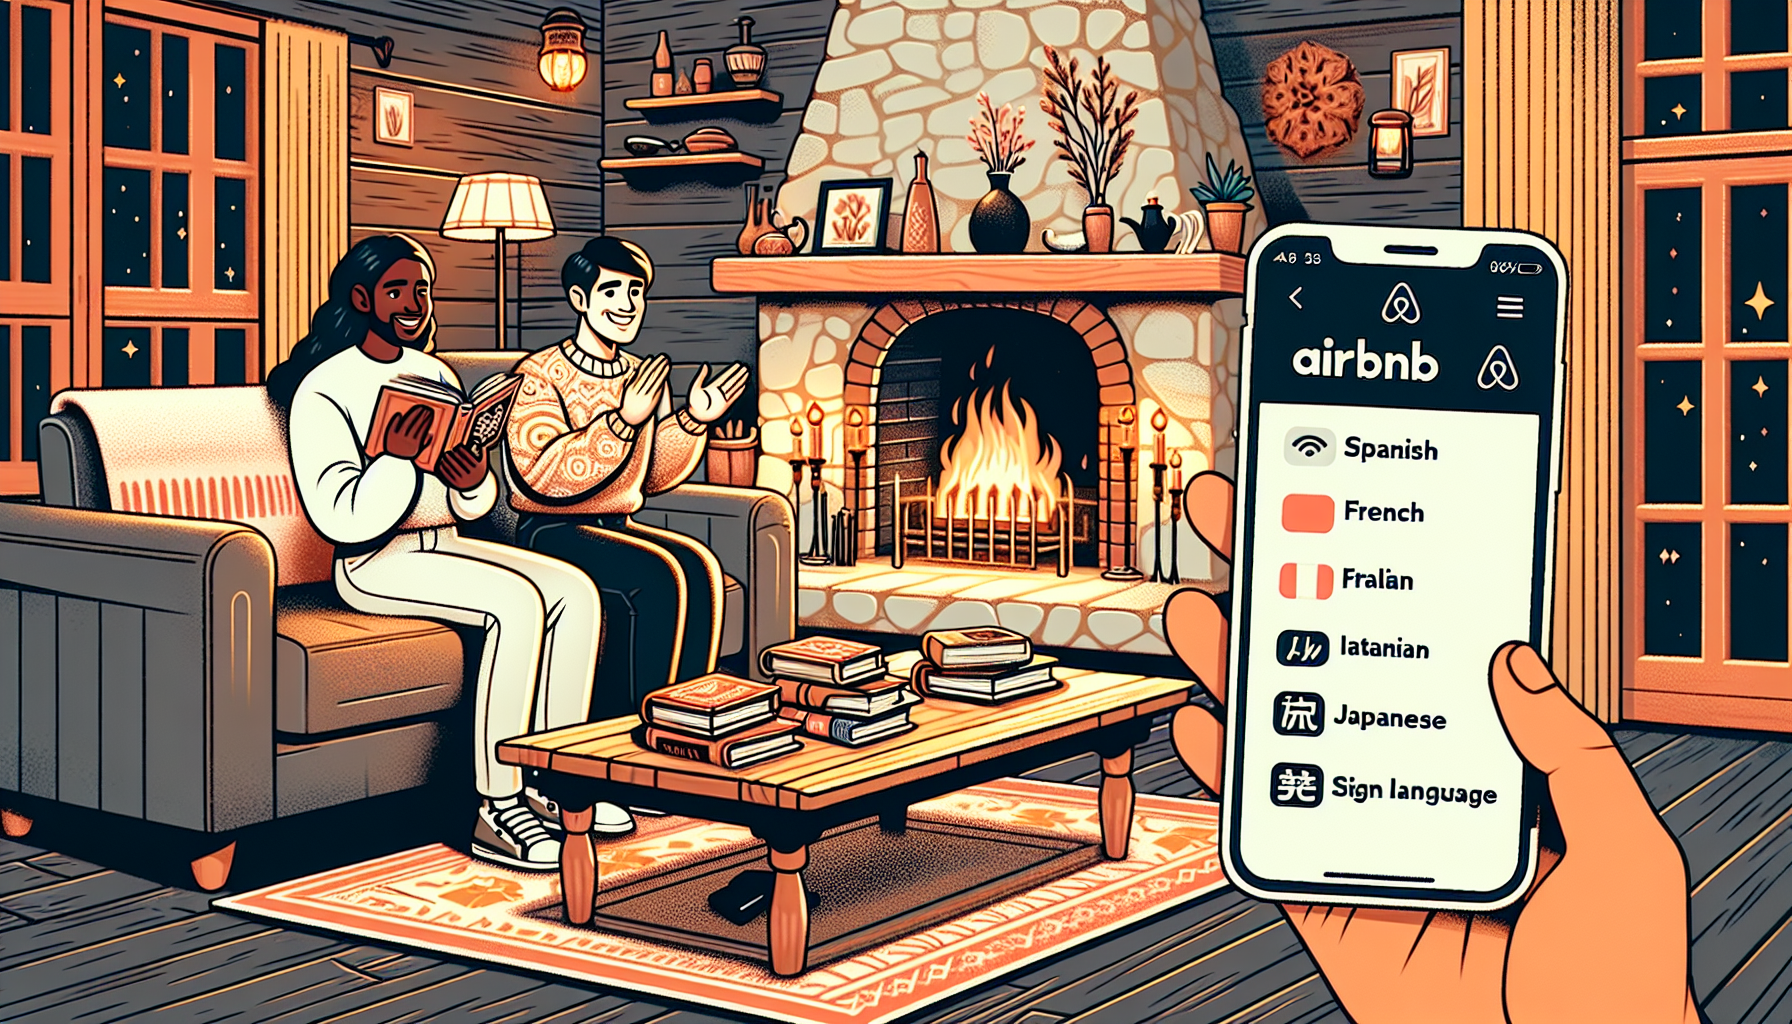 découvrez nos services d'assistance multilingue pour les hôtes airbnb afin de maximiser votre expérience de location et de garantir la satisfaction de vos invités.